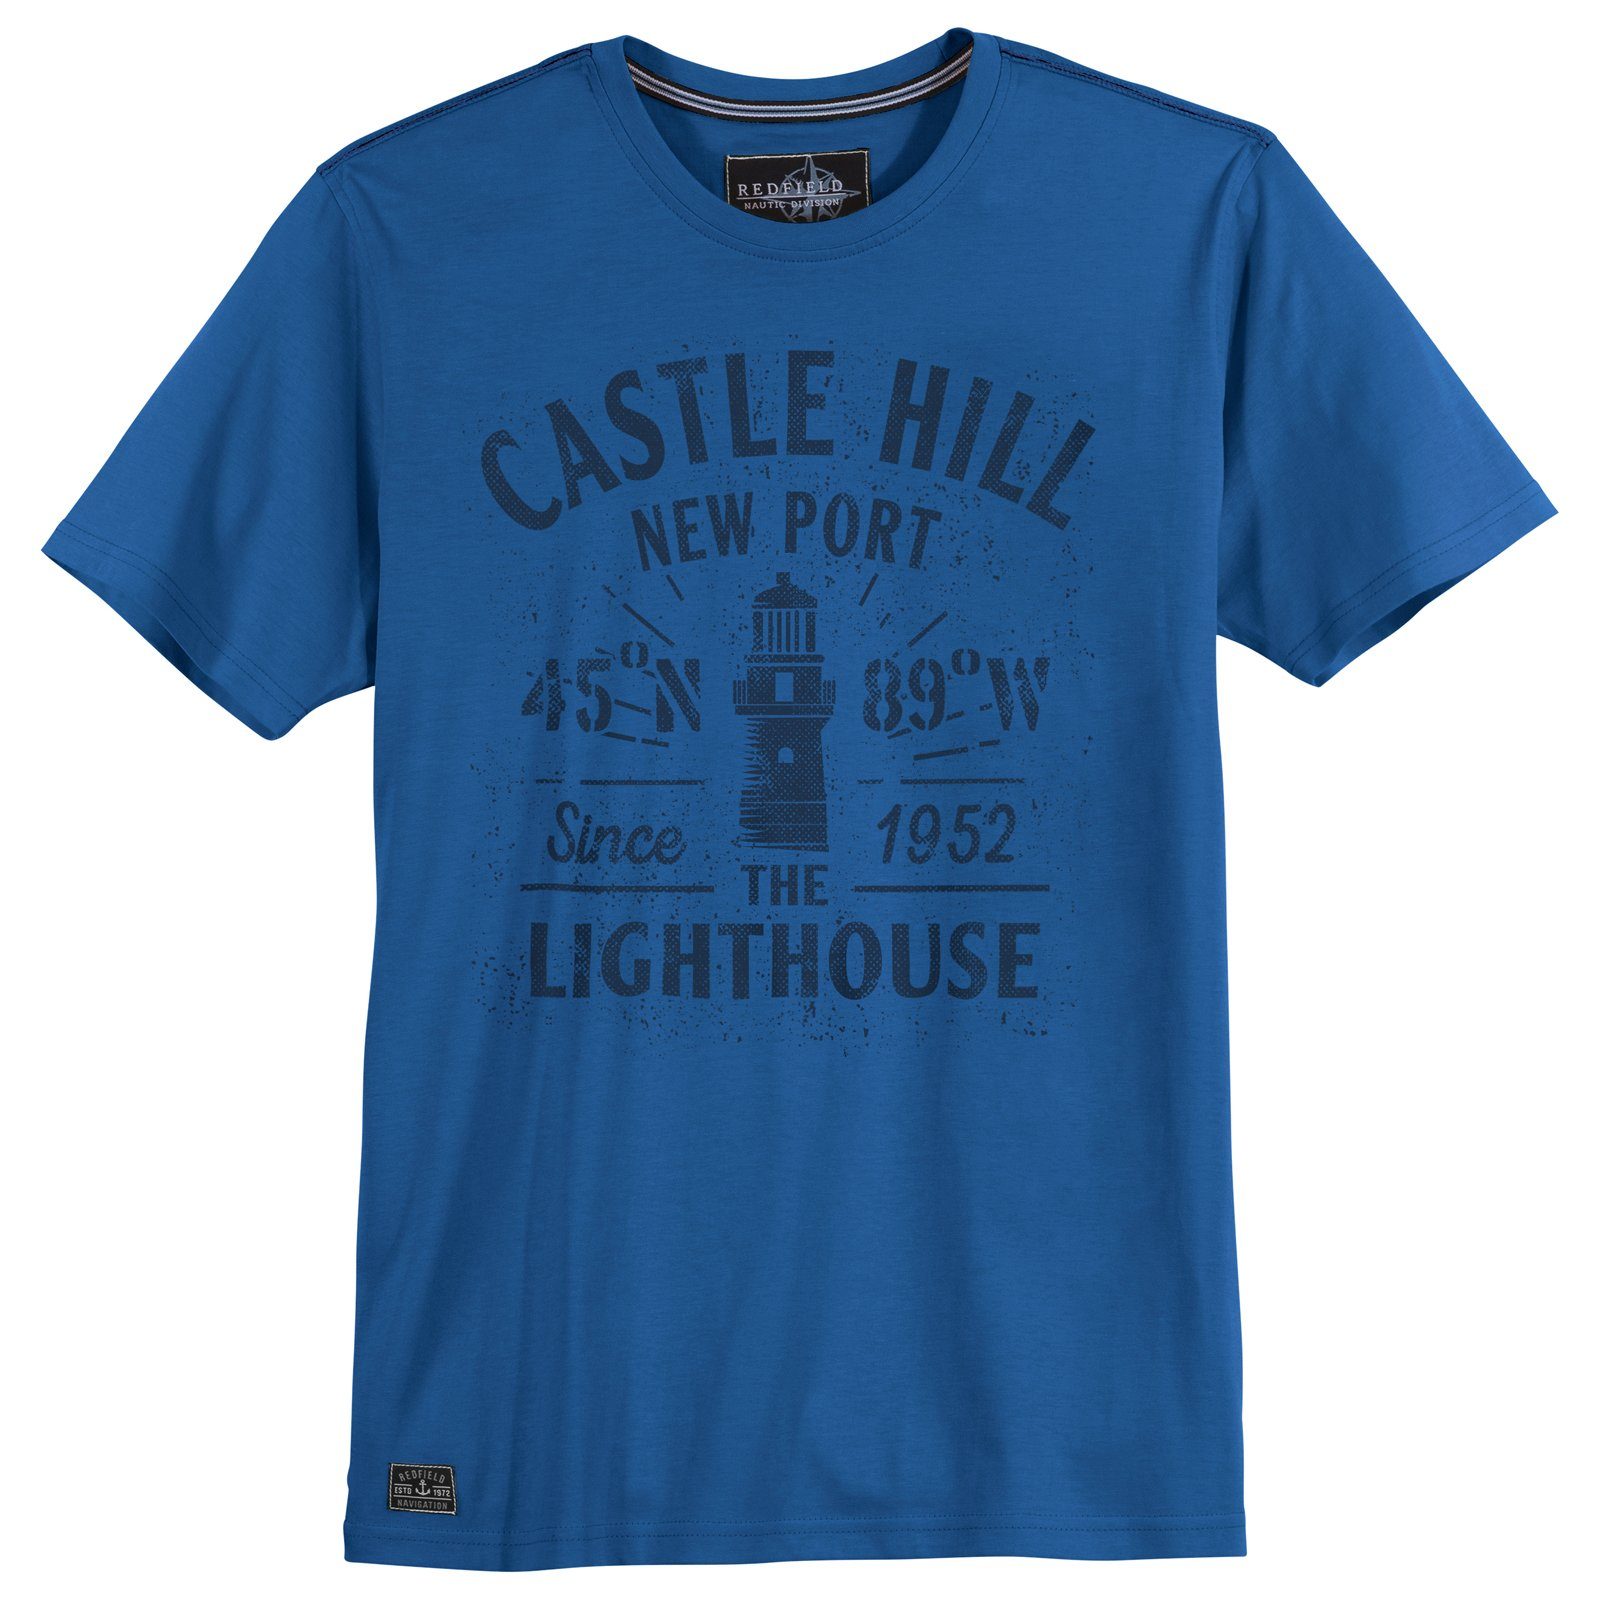 Hill Castle blau Größen T-Shirt redfield Redfield Herren Große Rundhalsshirt